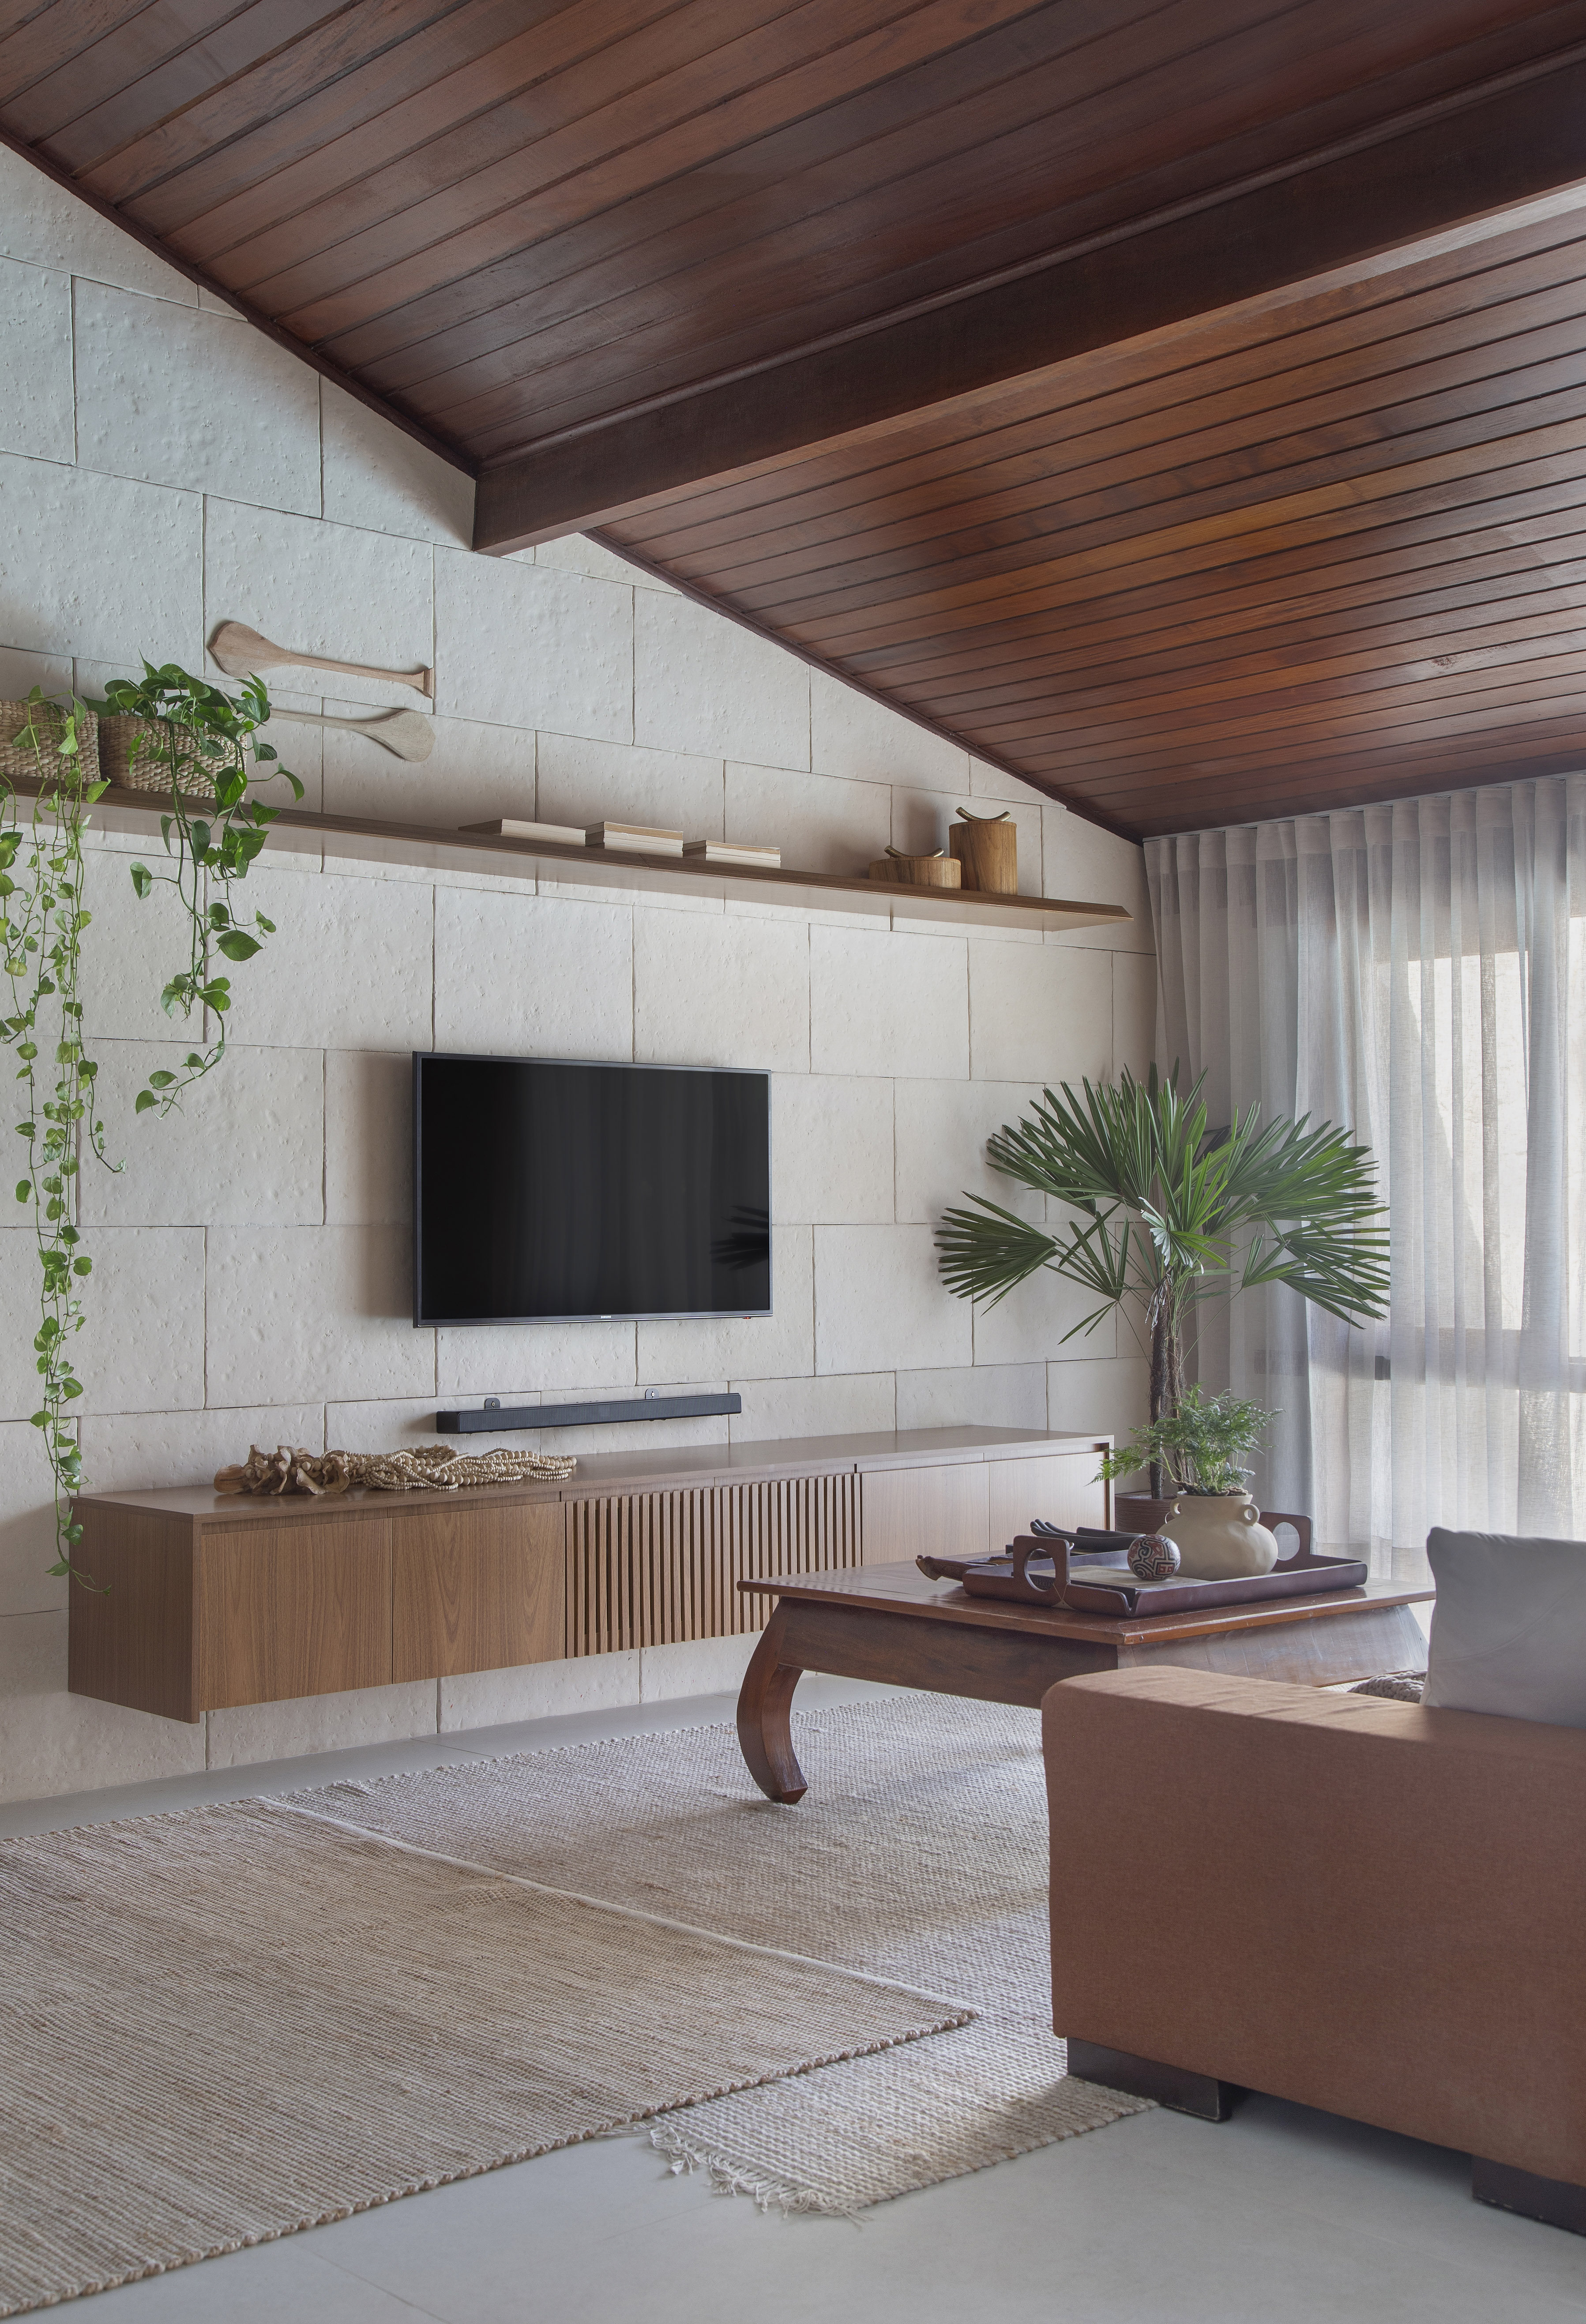 Ilha de cozinha revestida de azulejos com peixes é destaque nesta casa. Projeto de Travessa Arquitetura. Na foto, sala de estar, sala de tv, prateleira com plantas, palmeira.